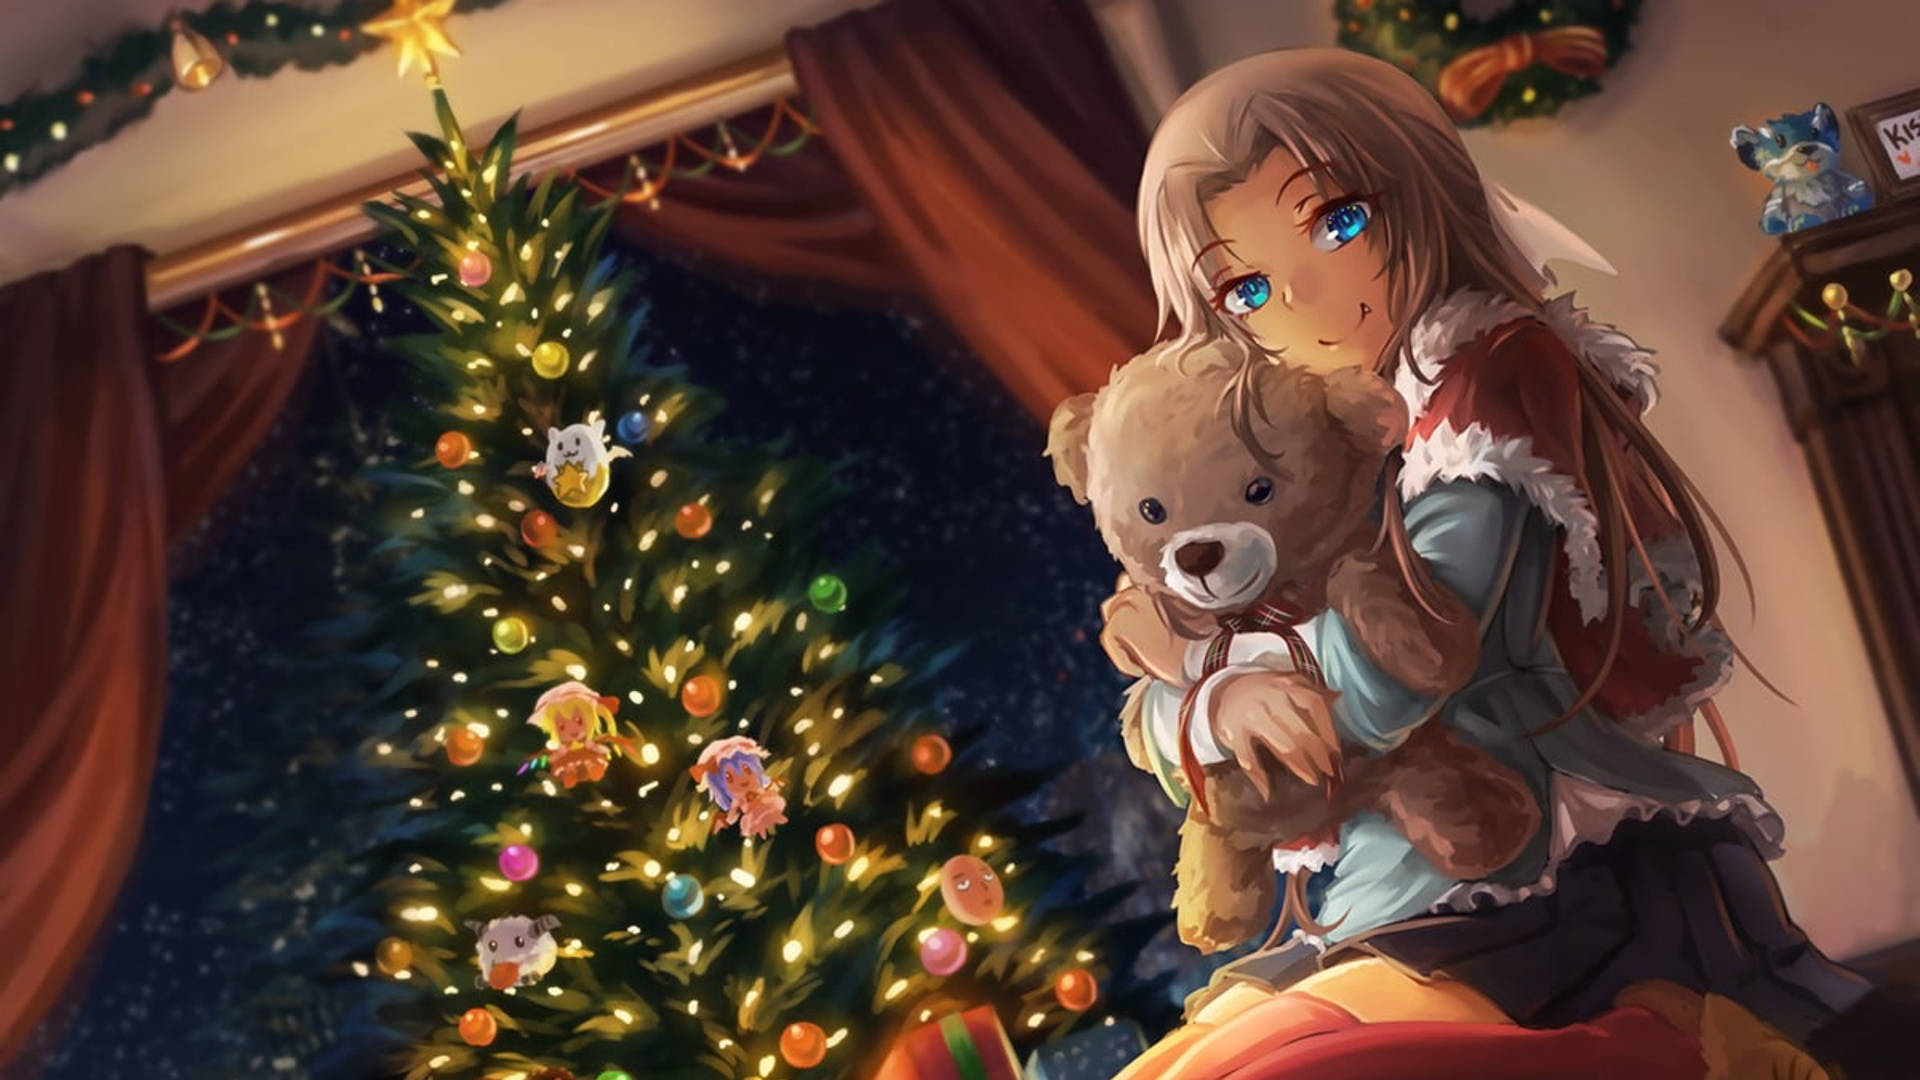 Anime Christmas Girl With Teddy Bear